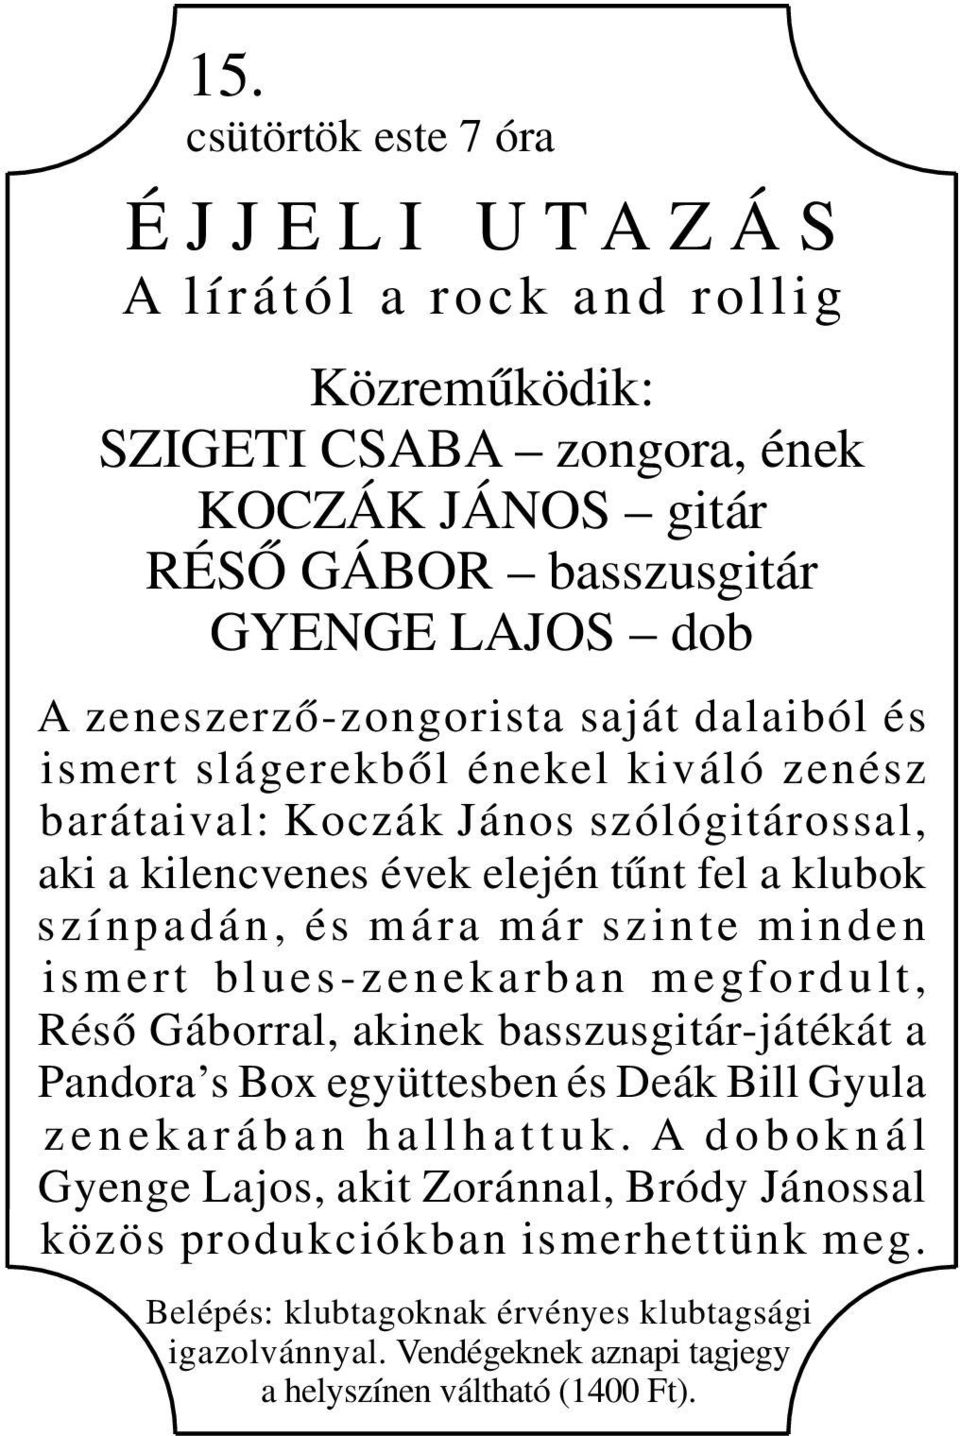 szinte minden ismert blues-zenekarban megfordult, Réső Gáborral, akinek basszusgitár-játékát a Pandora s Box együttesben és Deák Bill Gyula z e n e k a r á b a n h a l l h a t t u k.